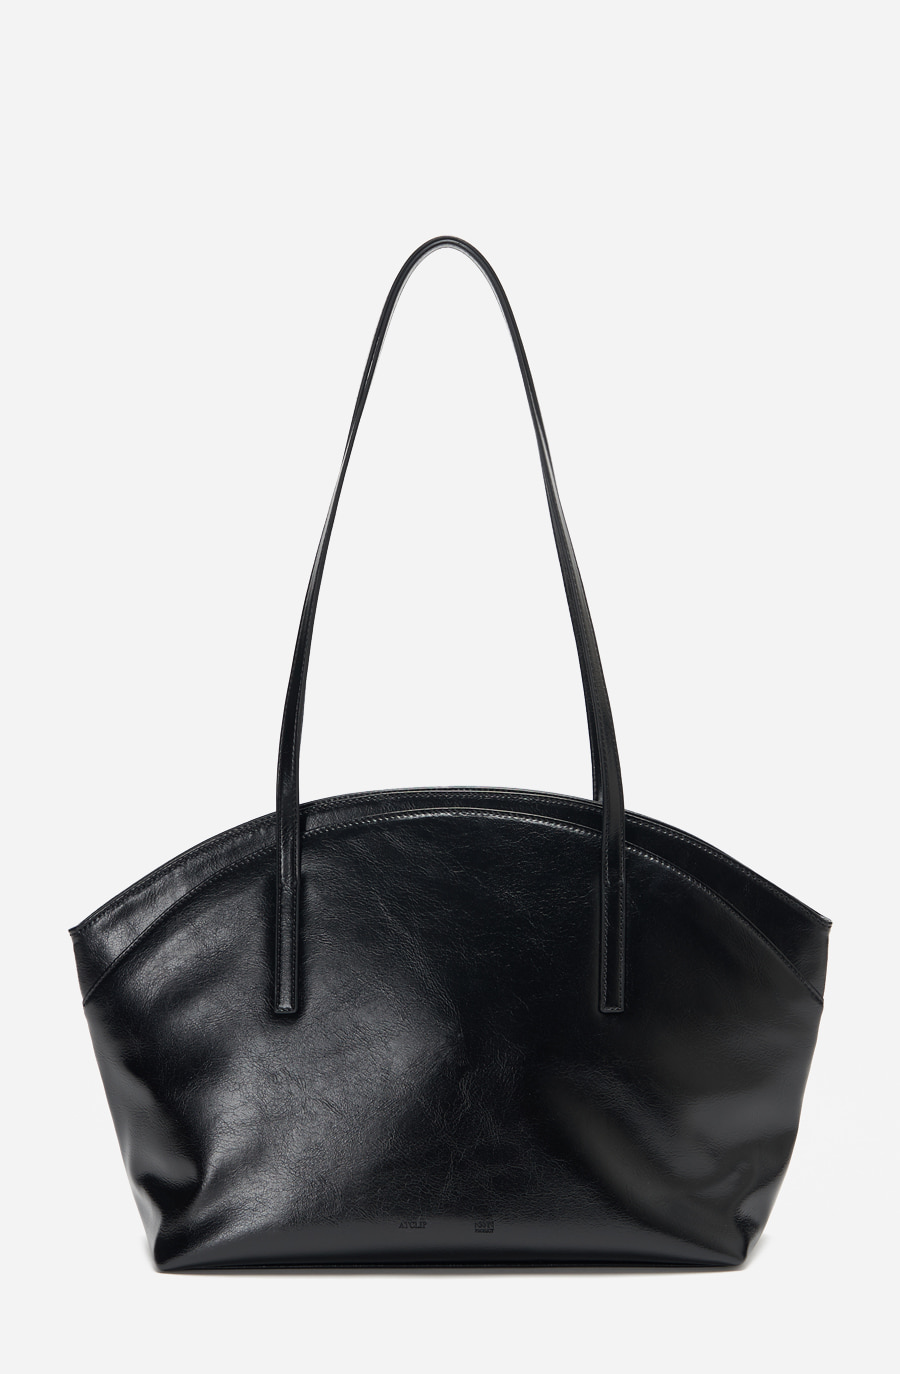 CLAM BAG (black)